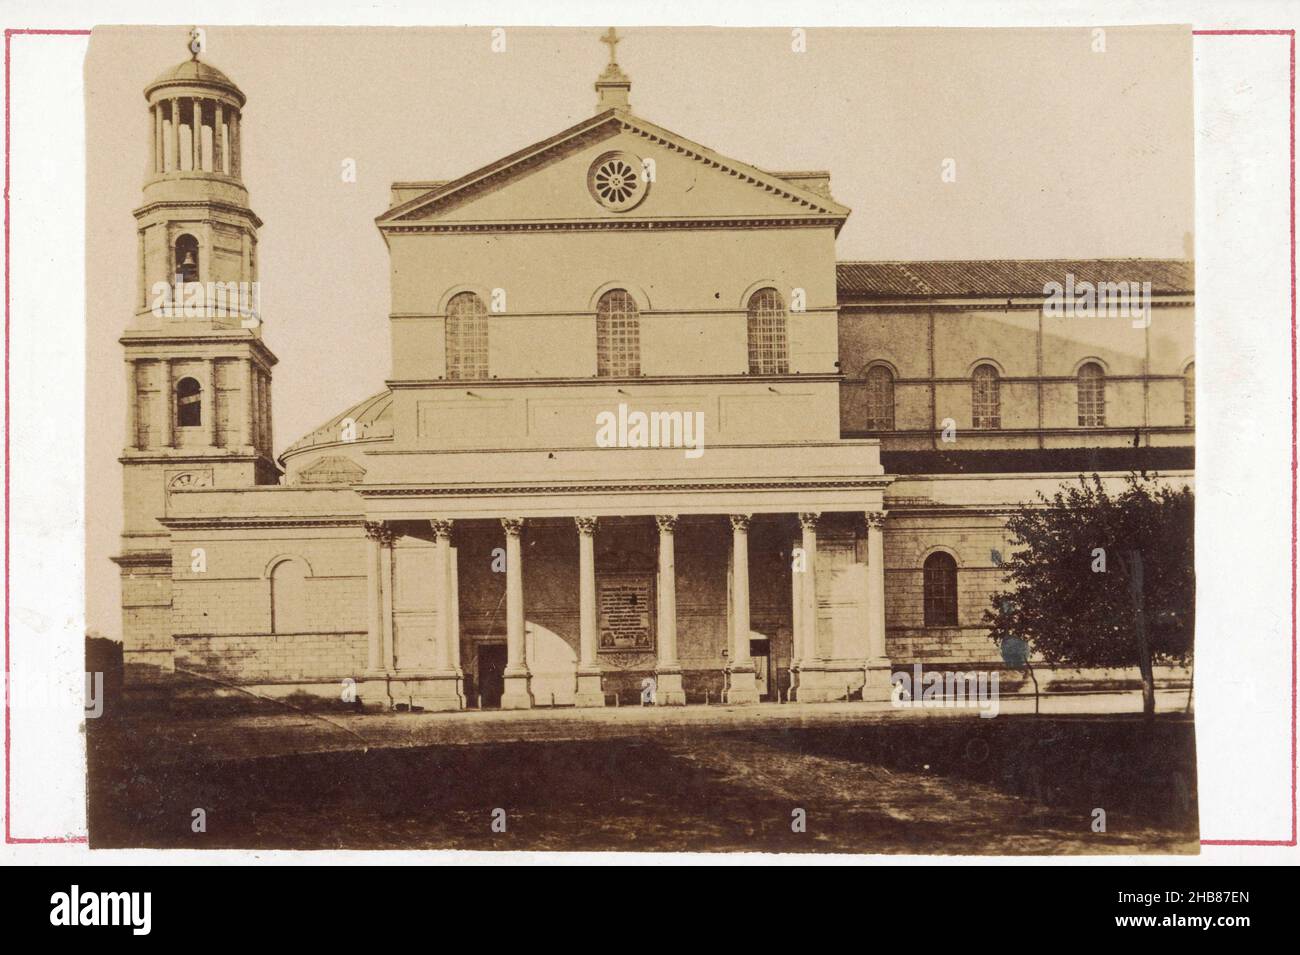 Ansicht des Paulus vor den Mauern in Rom, anonym, Sint-Paulus buiten de Muren, 1850 - 1900, Karton, Albumendruck, Höhe 107 mm × Breite 167 mm Stockfoto